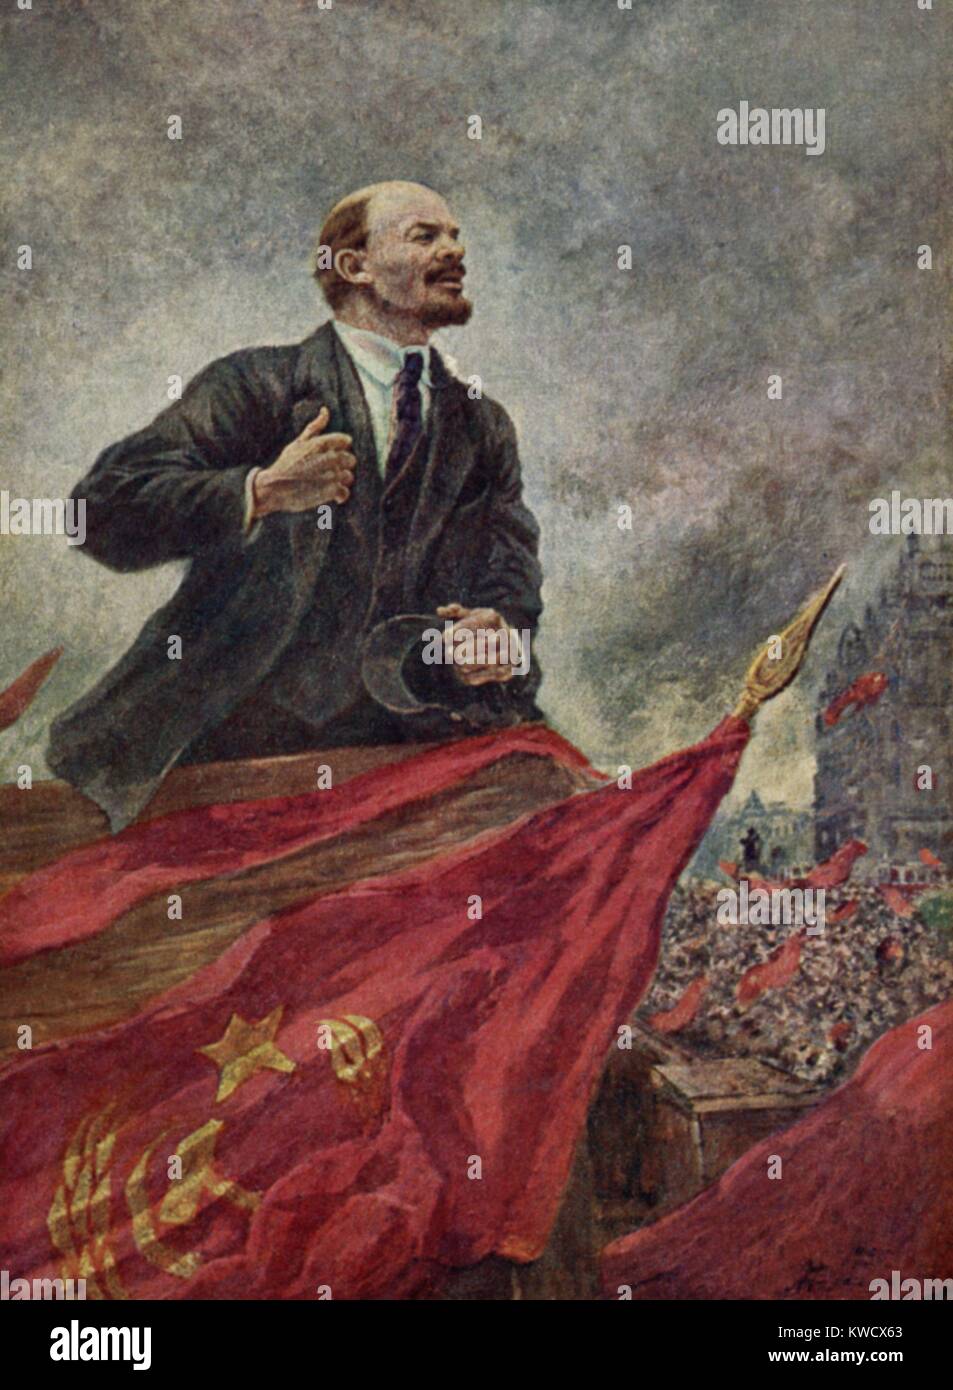 LENIN AUF DEM STAND, von Alexander Gerassimov, C. 1925-1940. Social-Realist Malerei von Lenin zu sprechen. Gerassimov war einer der prominentesten und politisch verbundenen Maler in der Mitte des Jahrhunderts das sowjetische Russland (BSLOC 2017 2 20) Stockfoto